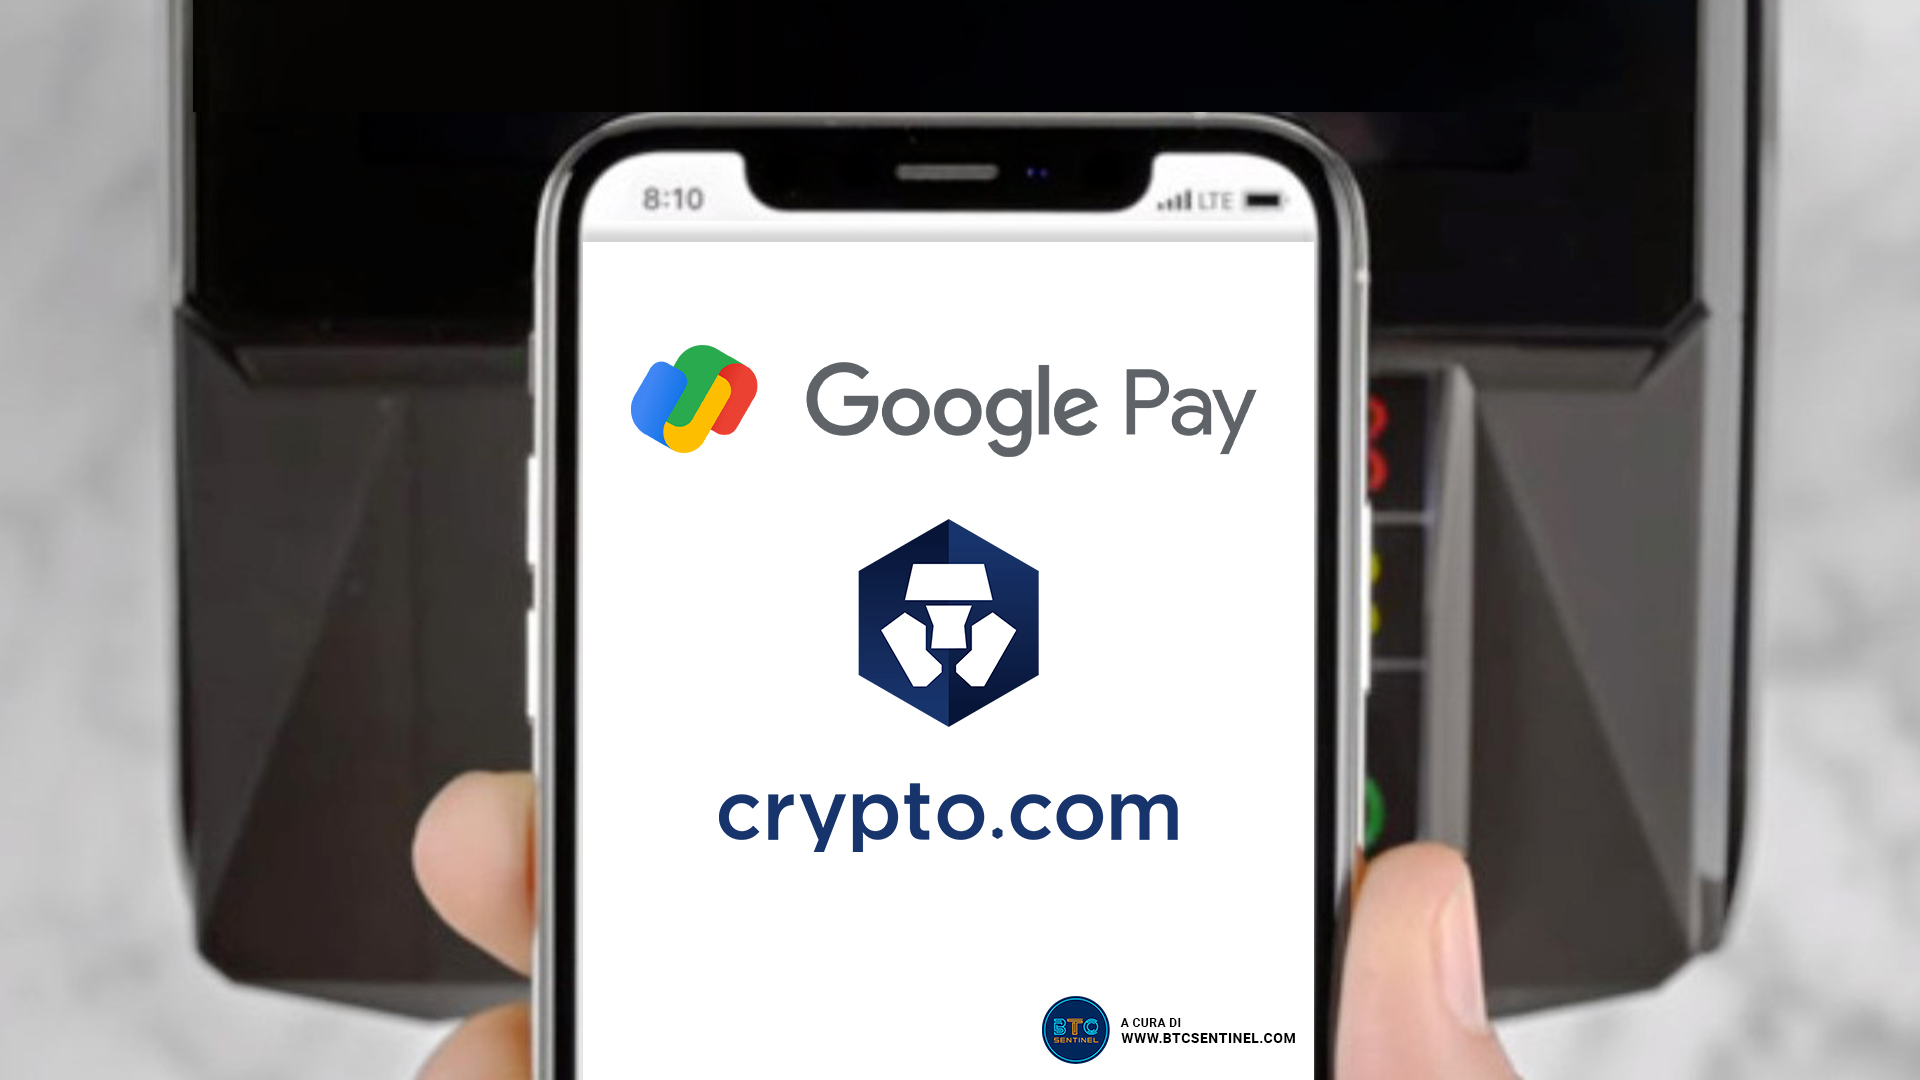 Google Pay consentirà ai clienti di acquistare criptovalute su Crypto.com